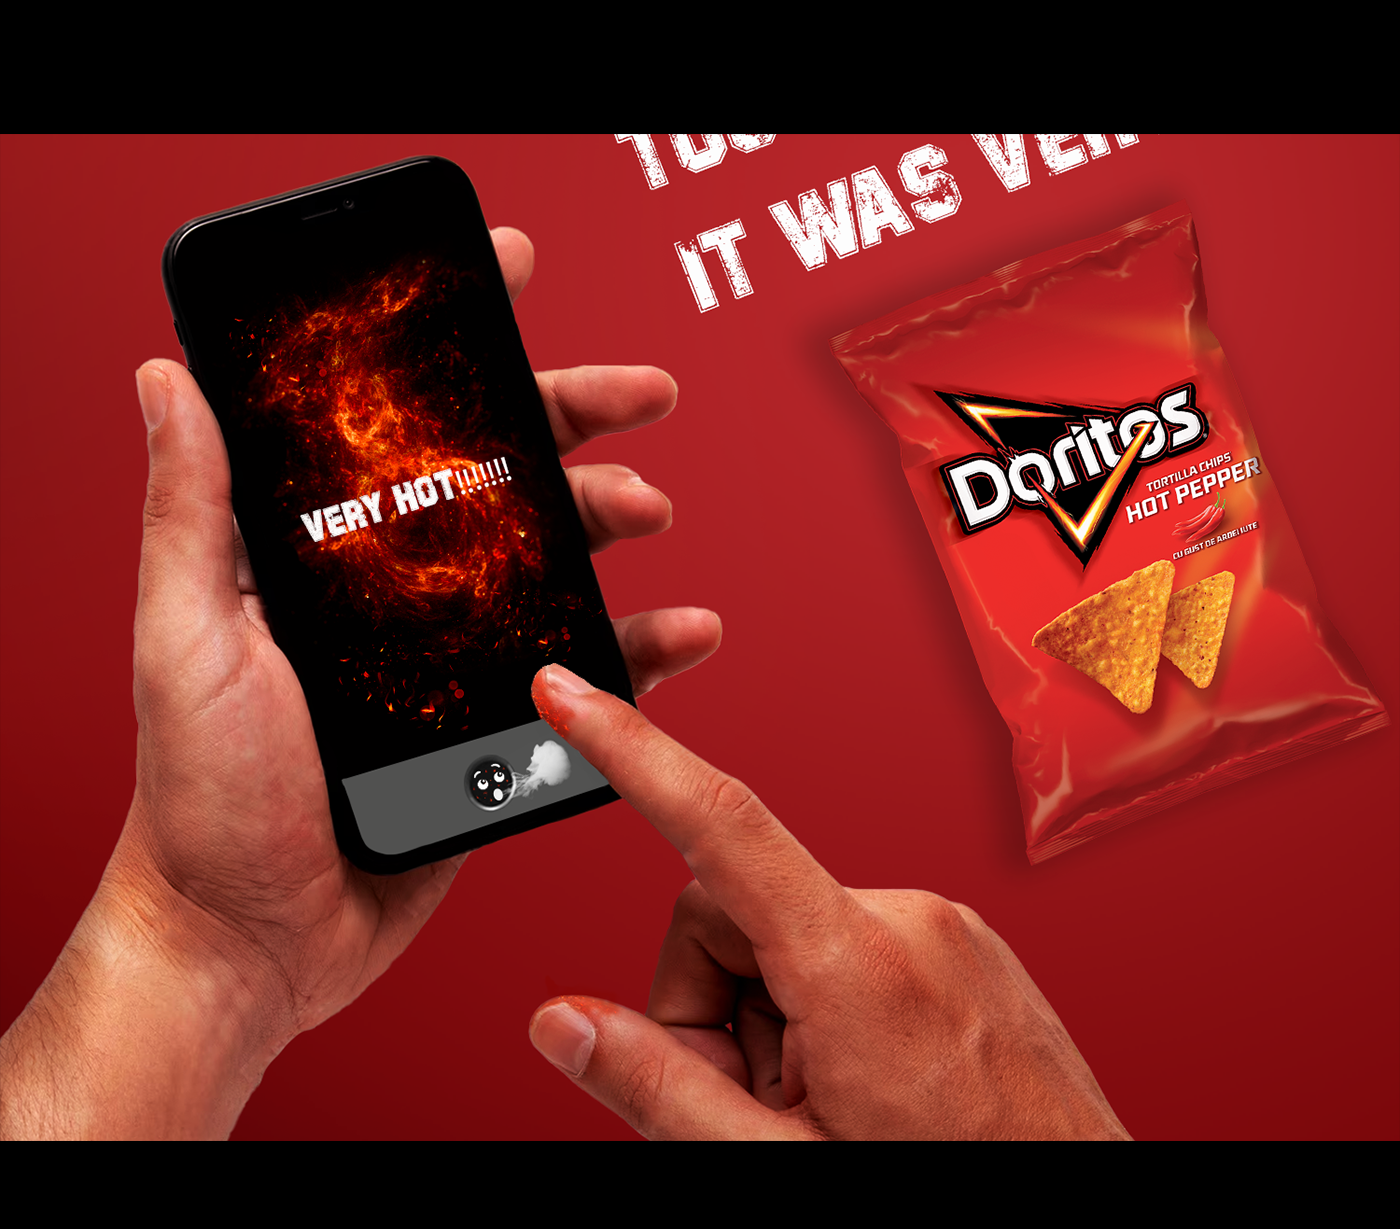 doritos chips Advertising  Social media post visualization creative ads manipulation Socialmedia design marketing  